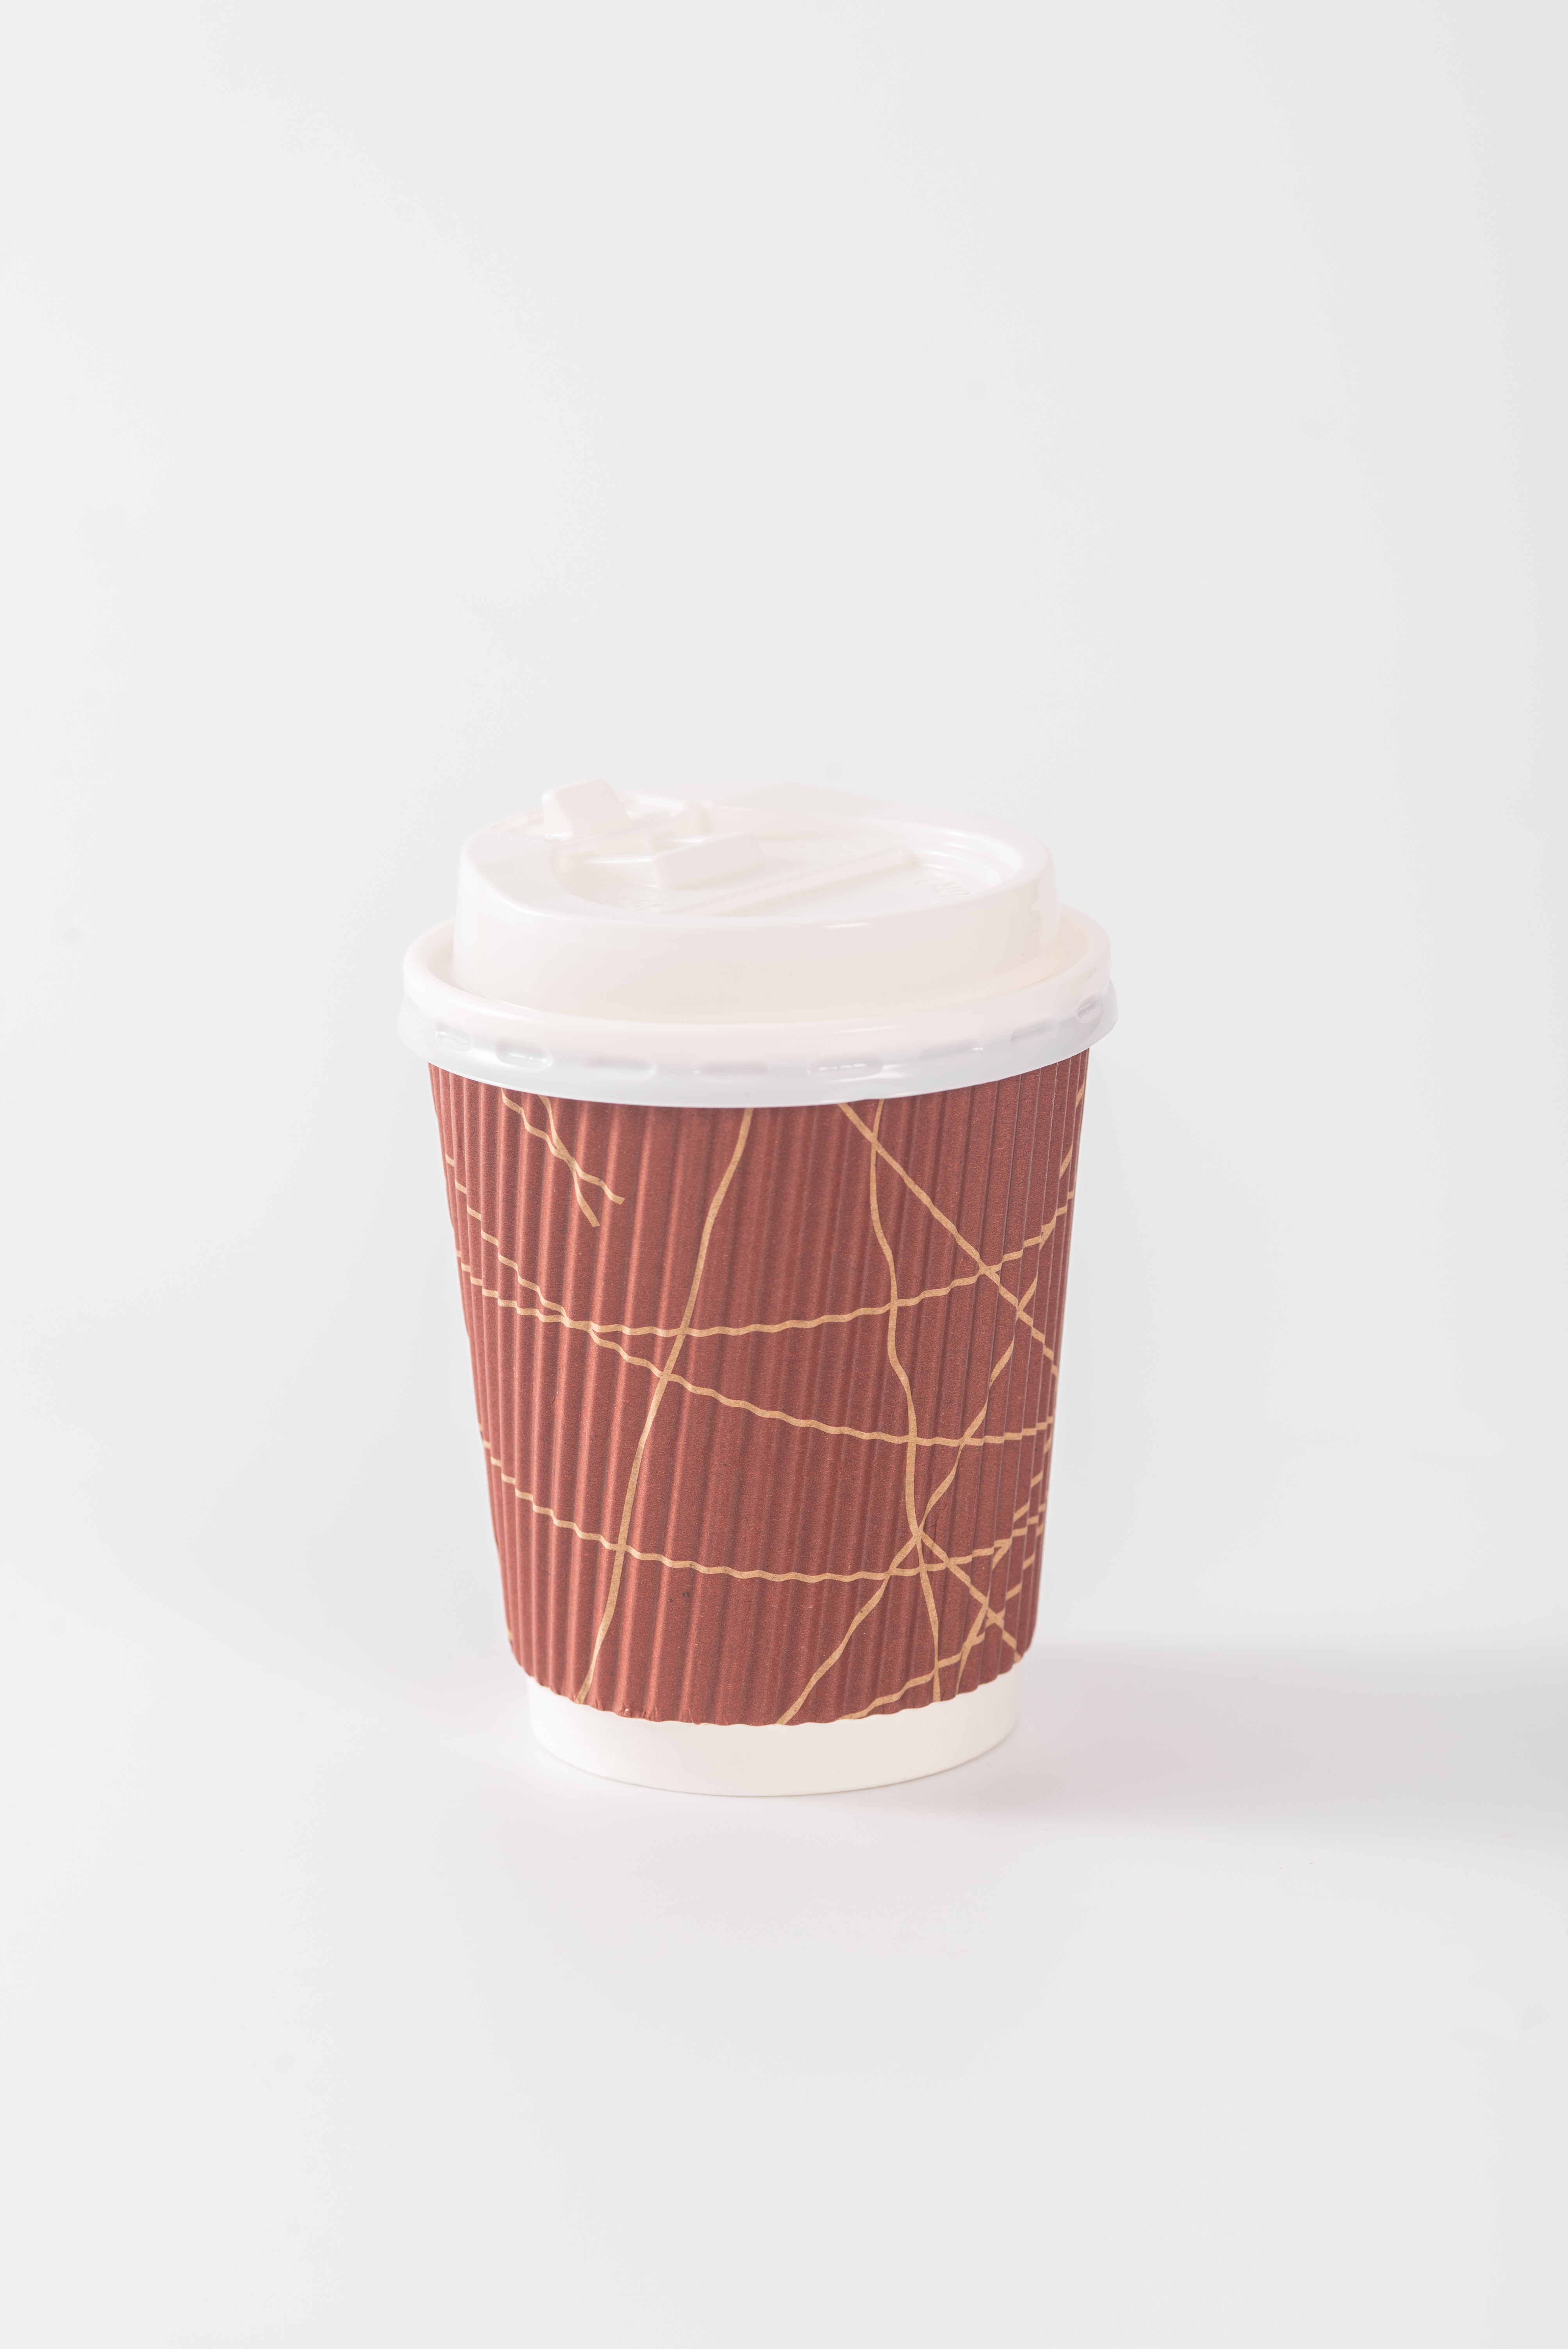 8 oz 12 oz 16 oz desechables de una sola pared/doble pared/tazas de café de papel ondulado para bebidas frías y bebidas calientes